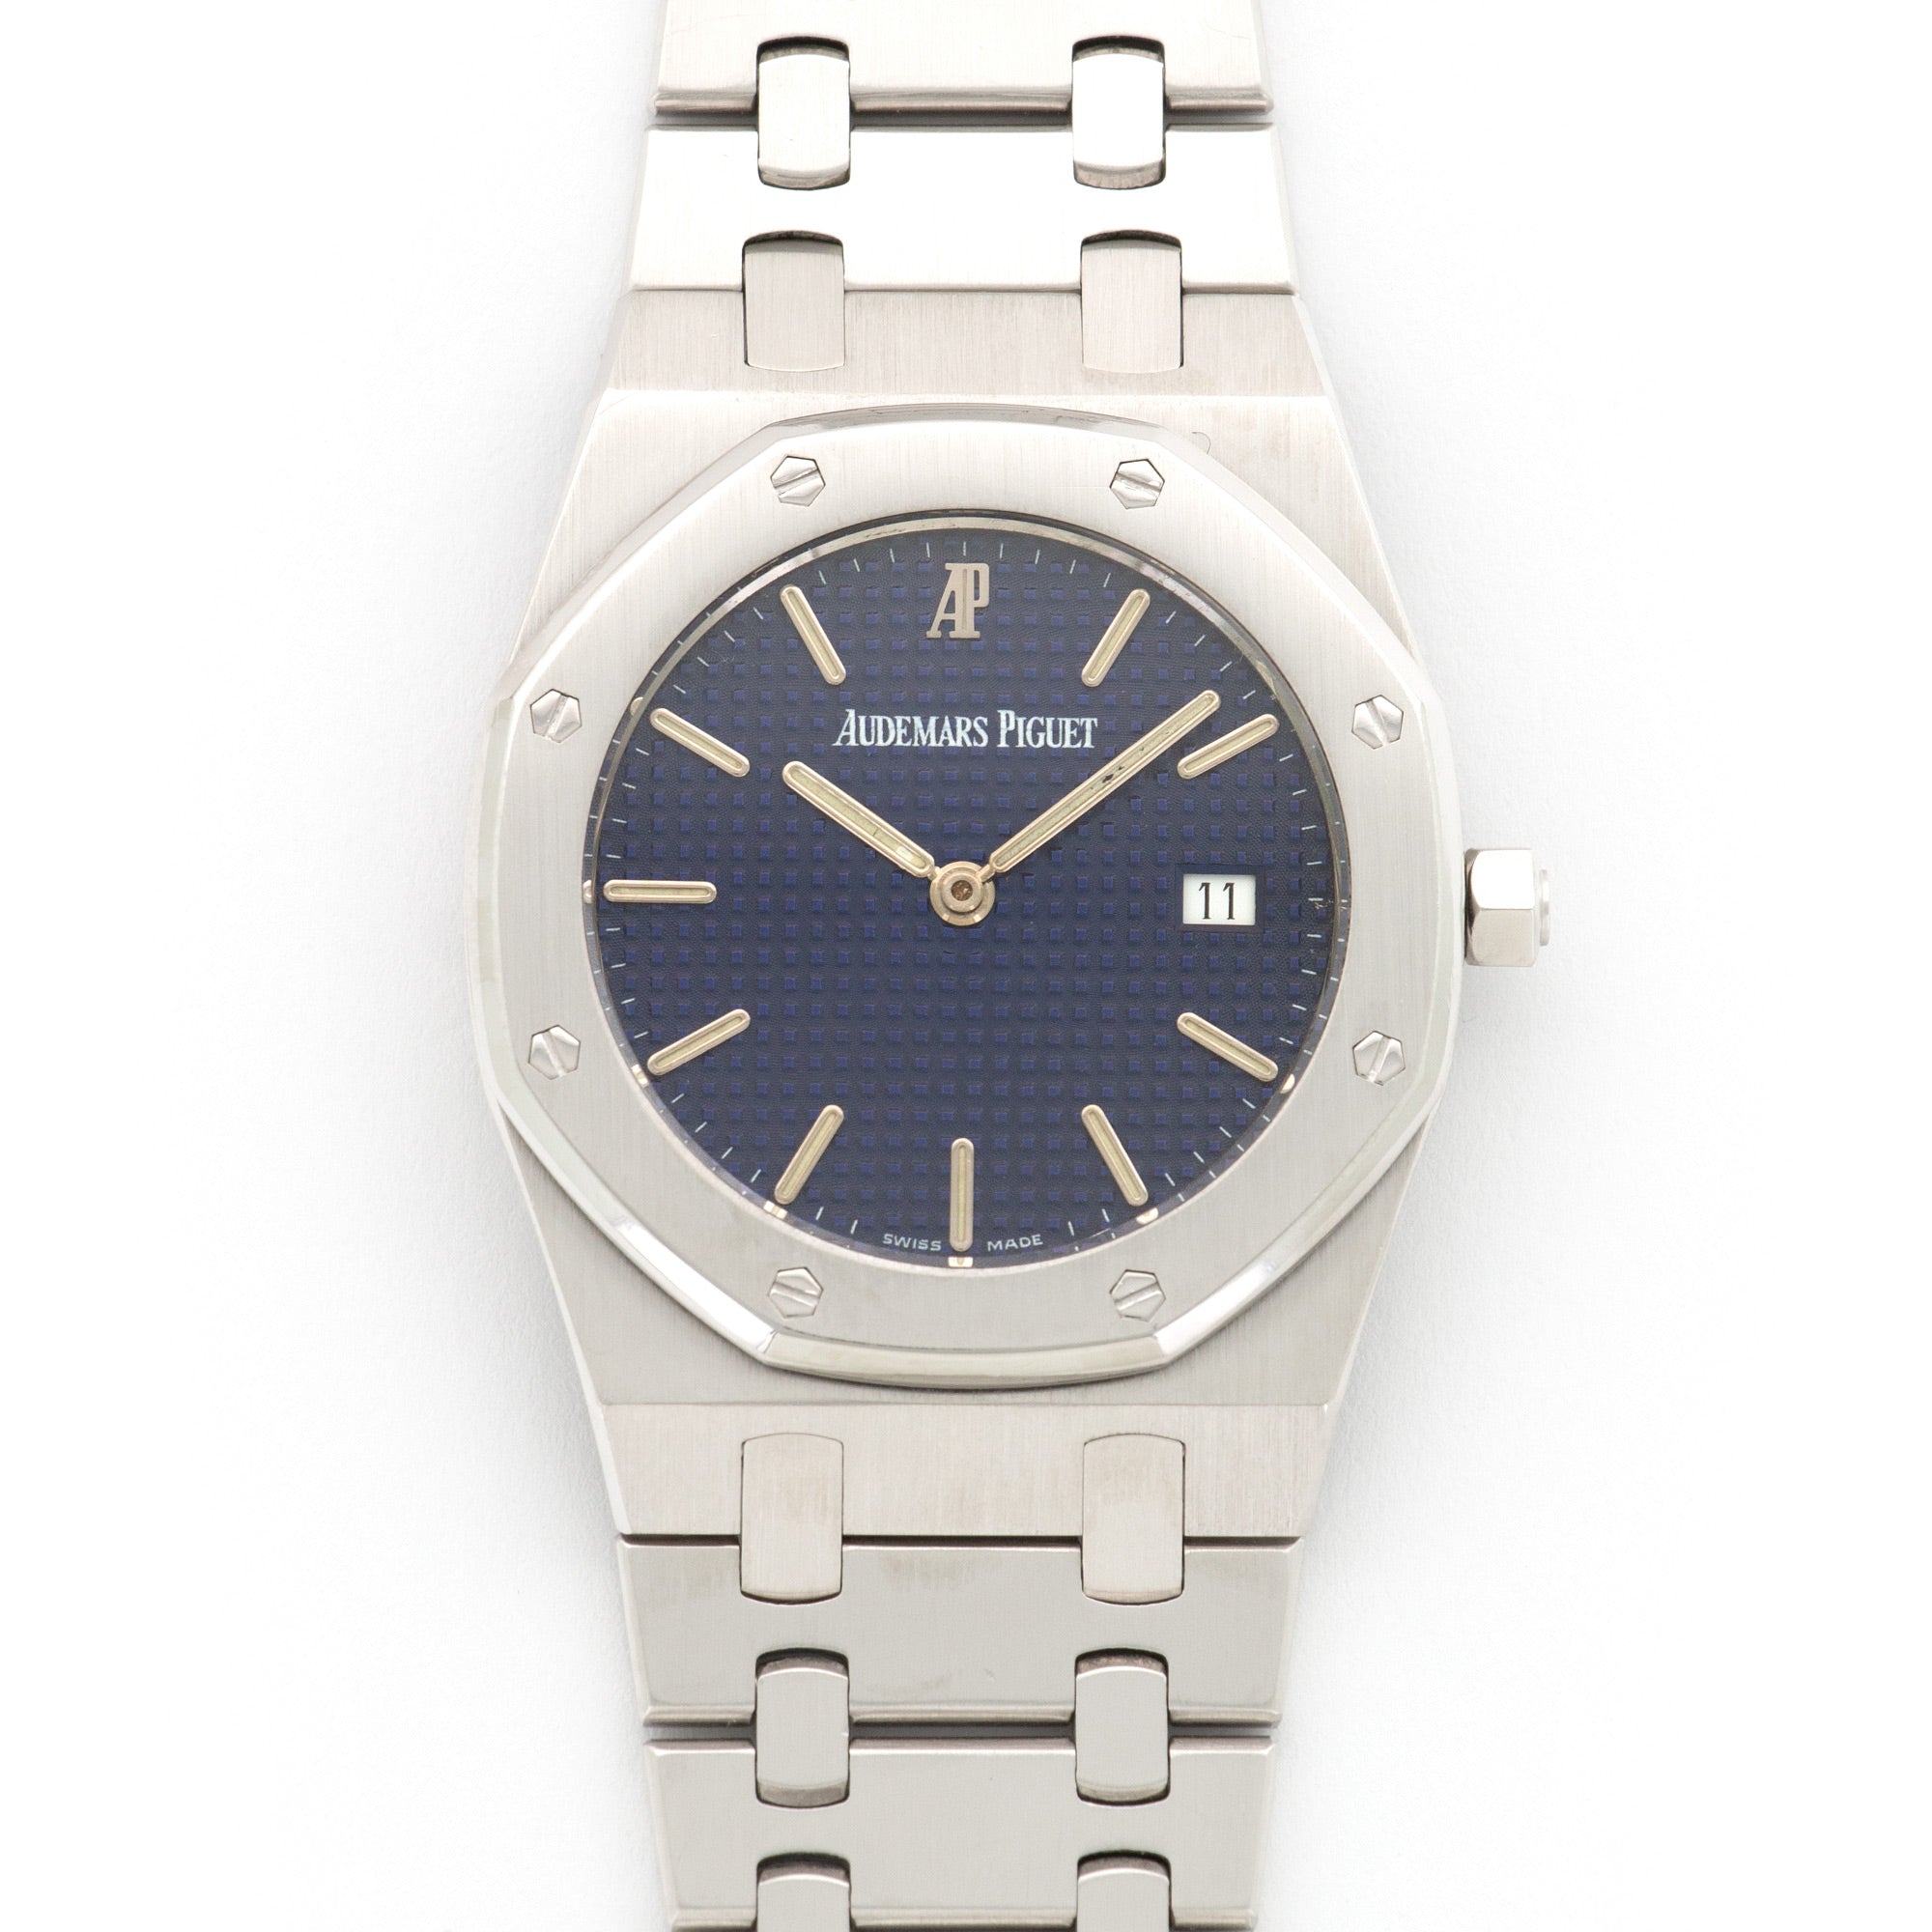 Audemars Piguet - Audemars Piguet White Gold Royal Oak Watch, Ref. 56175 - The Keystone Watches